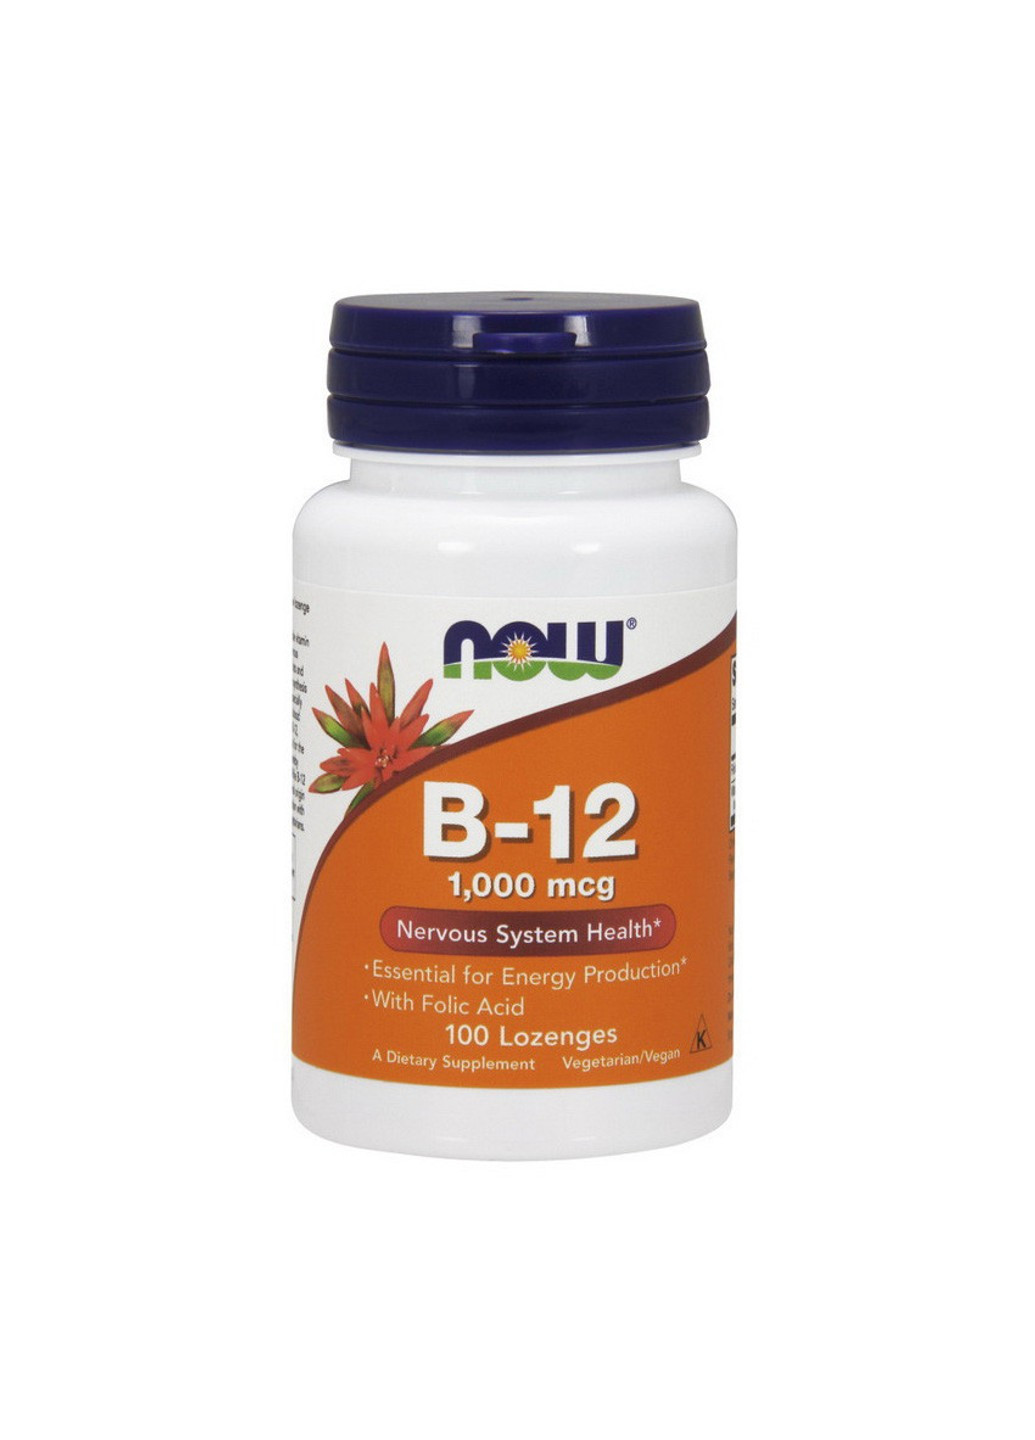 Вітамін Б12 B-12 1000 mсg (100 льодяників) цианокобаламин нау фудс Now Foods (255409799)